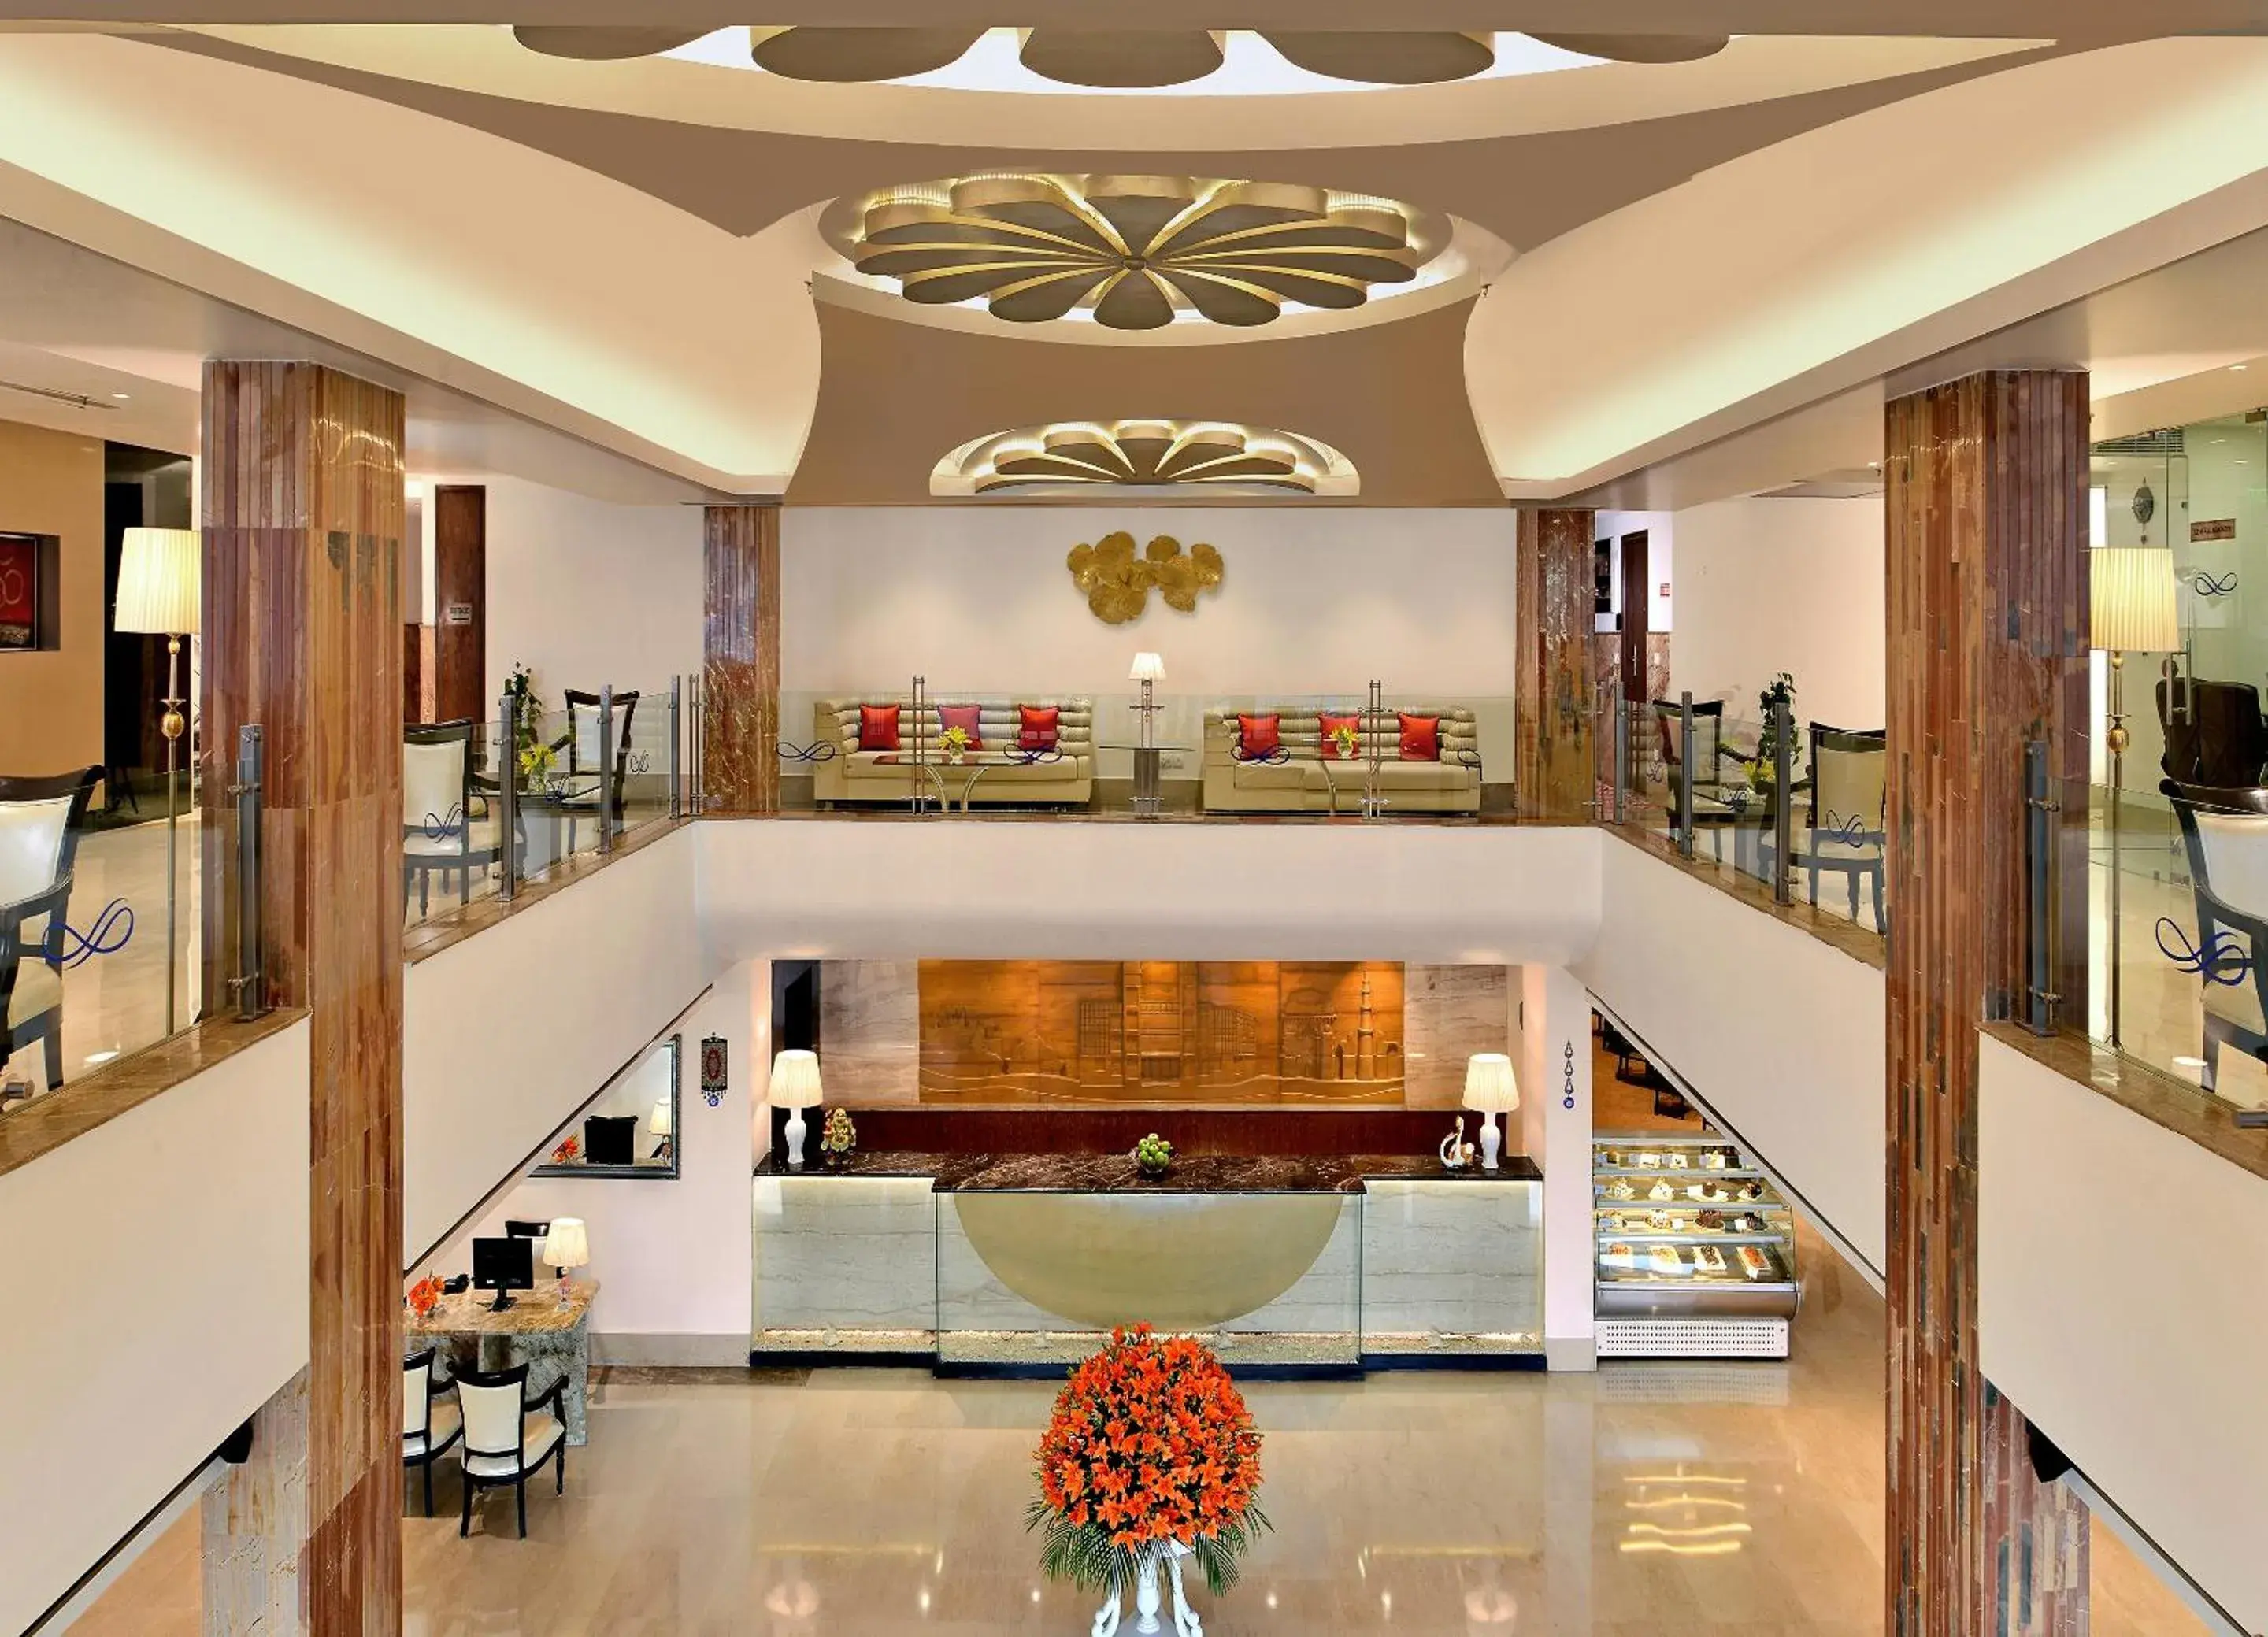 Lobby or reception in Taurus Sarovar Portico